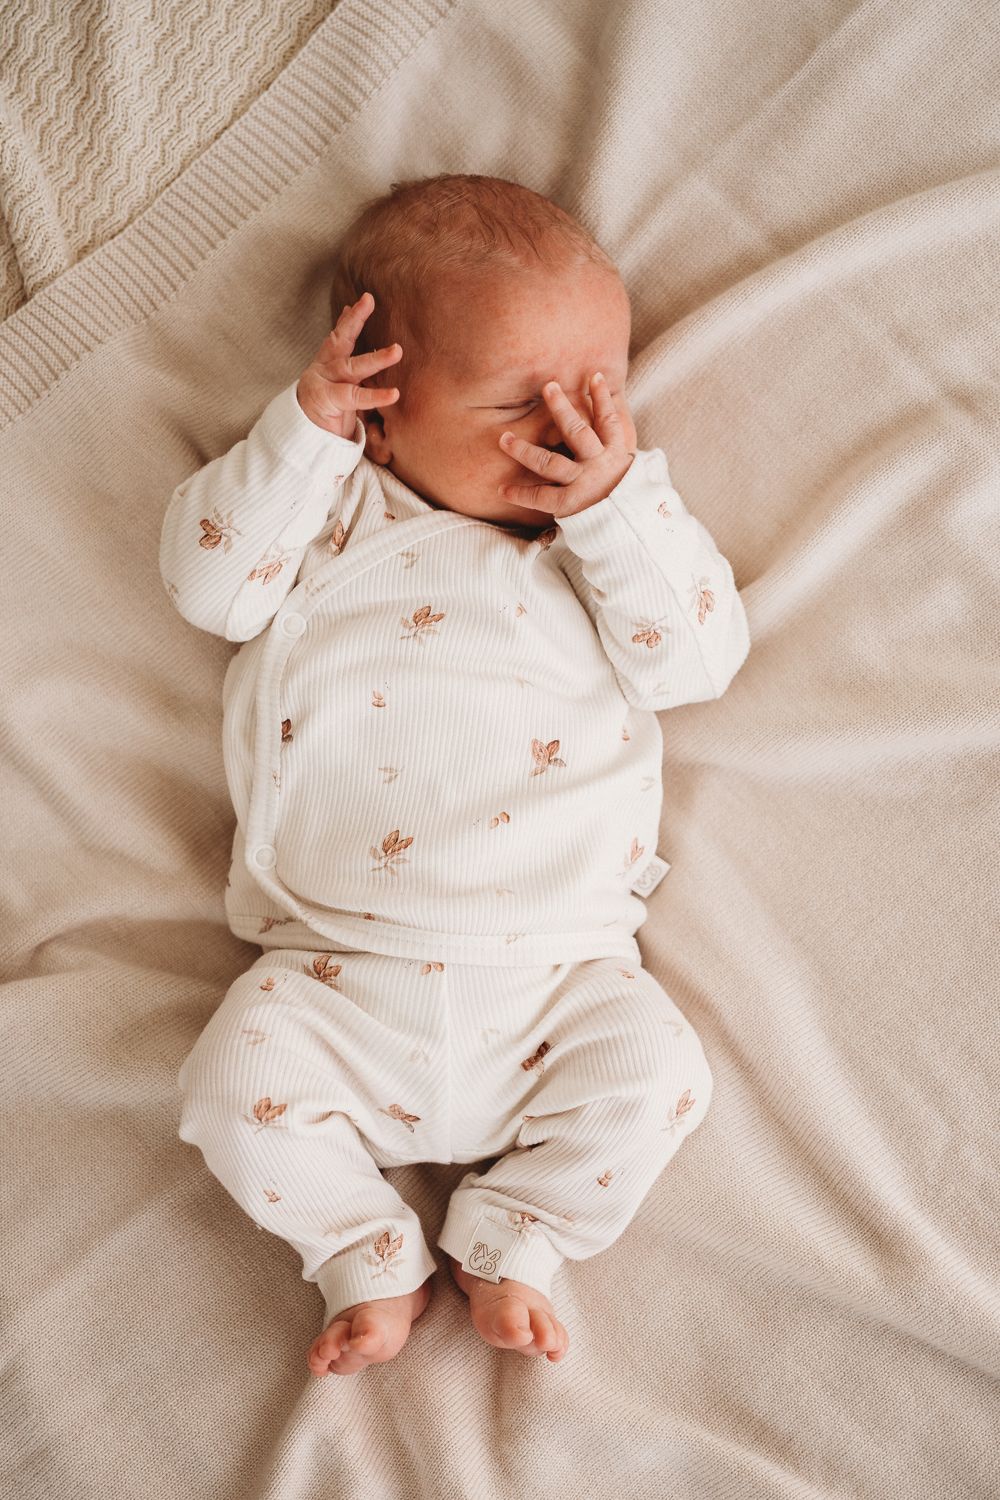 Vreedzame slaap: een pasgeboren baby rust rustig uit in een knusse outfit gemaakt van Yumi Baby's Overslagshirt Cocoa, die de pure onschuld van het vroege leven belichaamt.